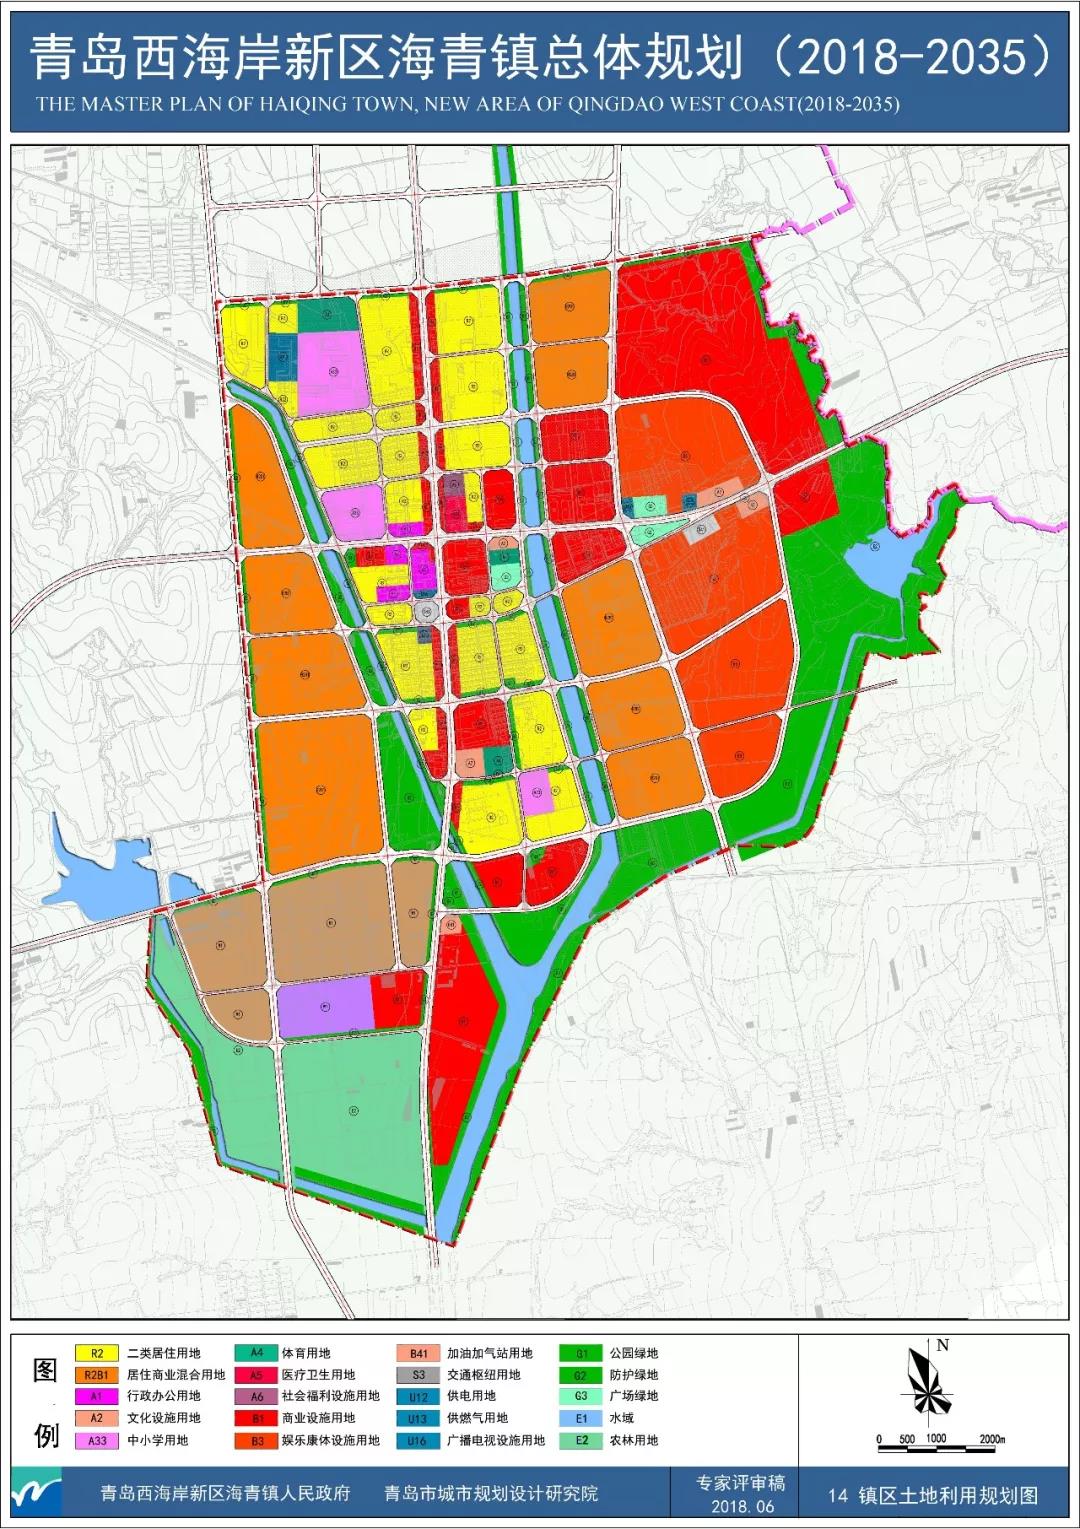 官方发布《青岛西海岸新区海青镇镇域总体规划(2018-2035年》公示